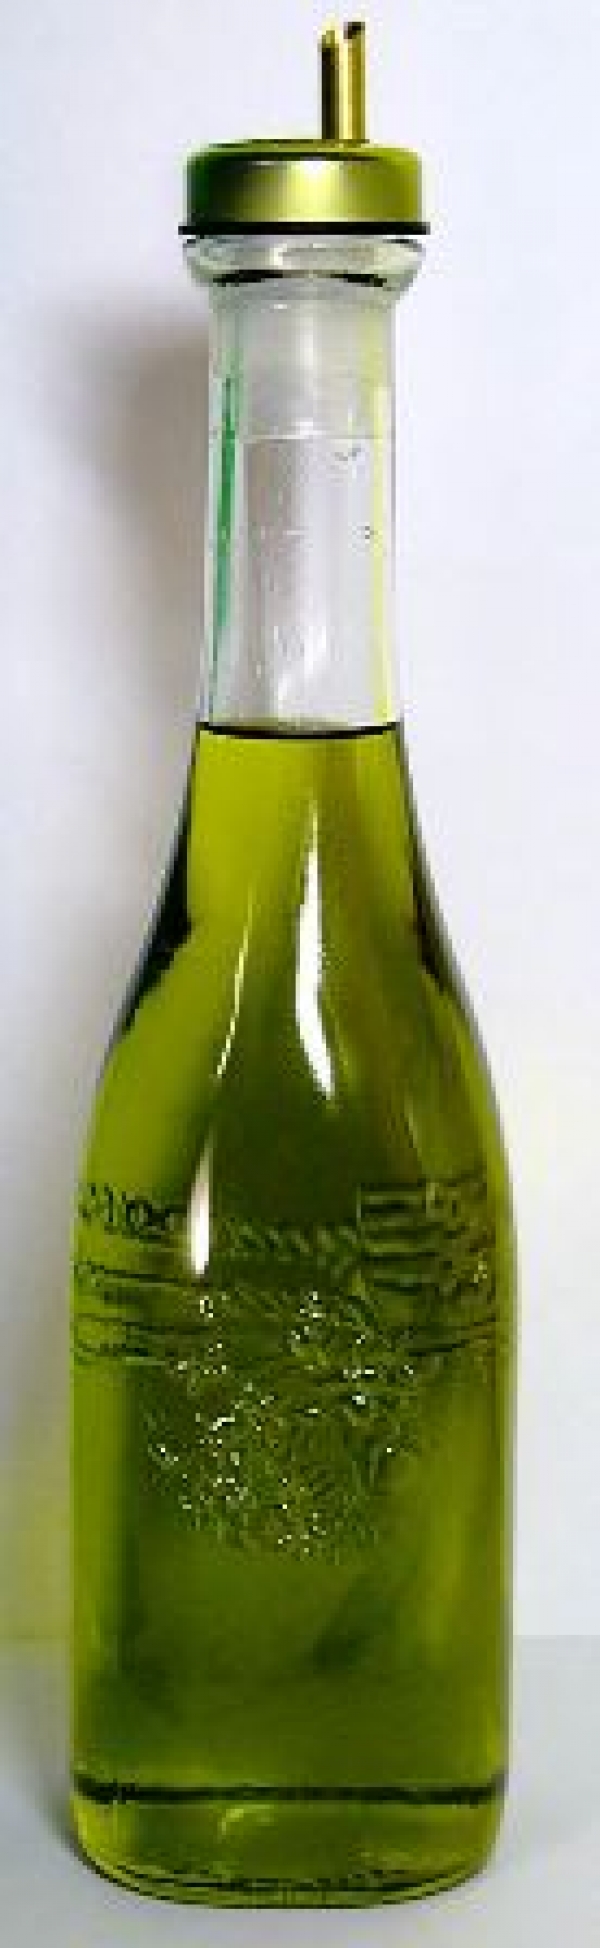 橄欖油-十一種橄欖油營養價值&amp;橄欖油功效:橄欖油含多酚和脂多糖有防輻射功效!